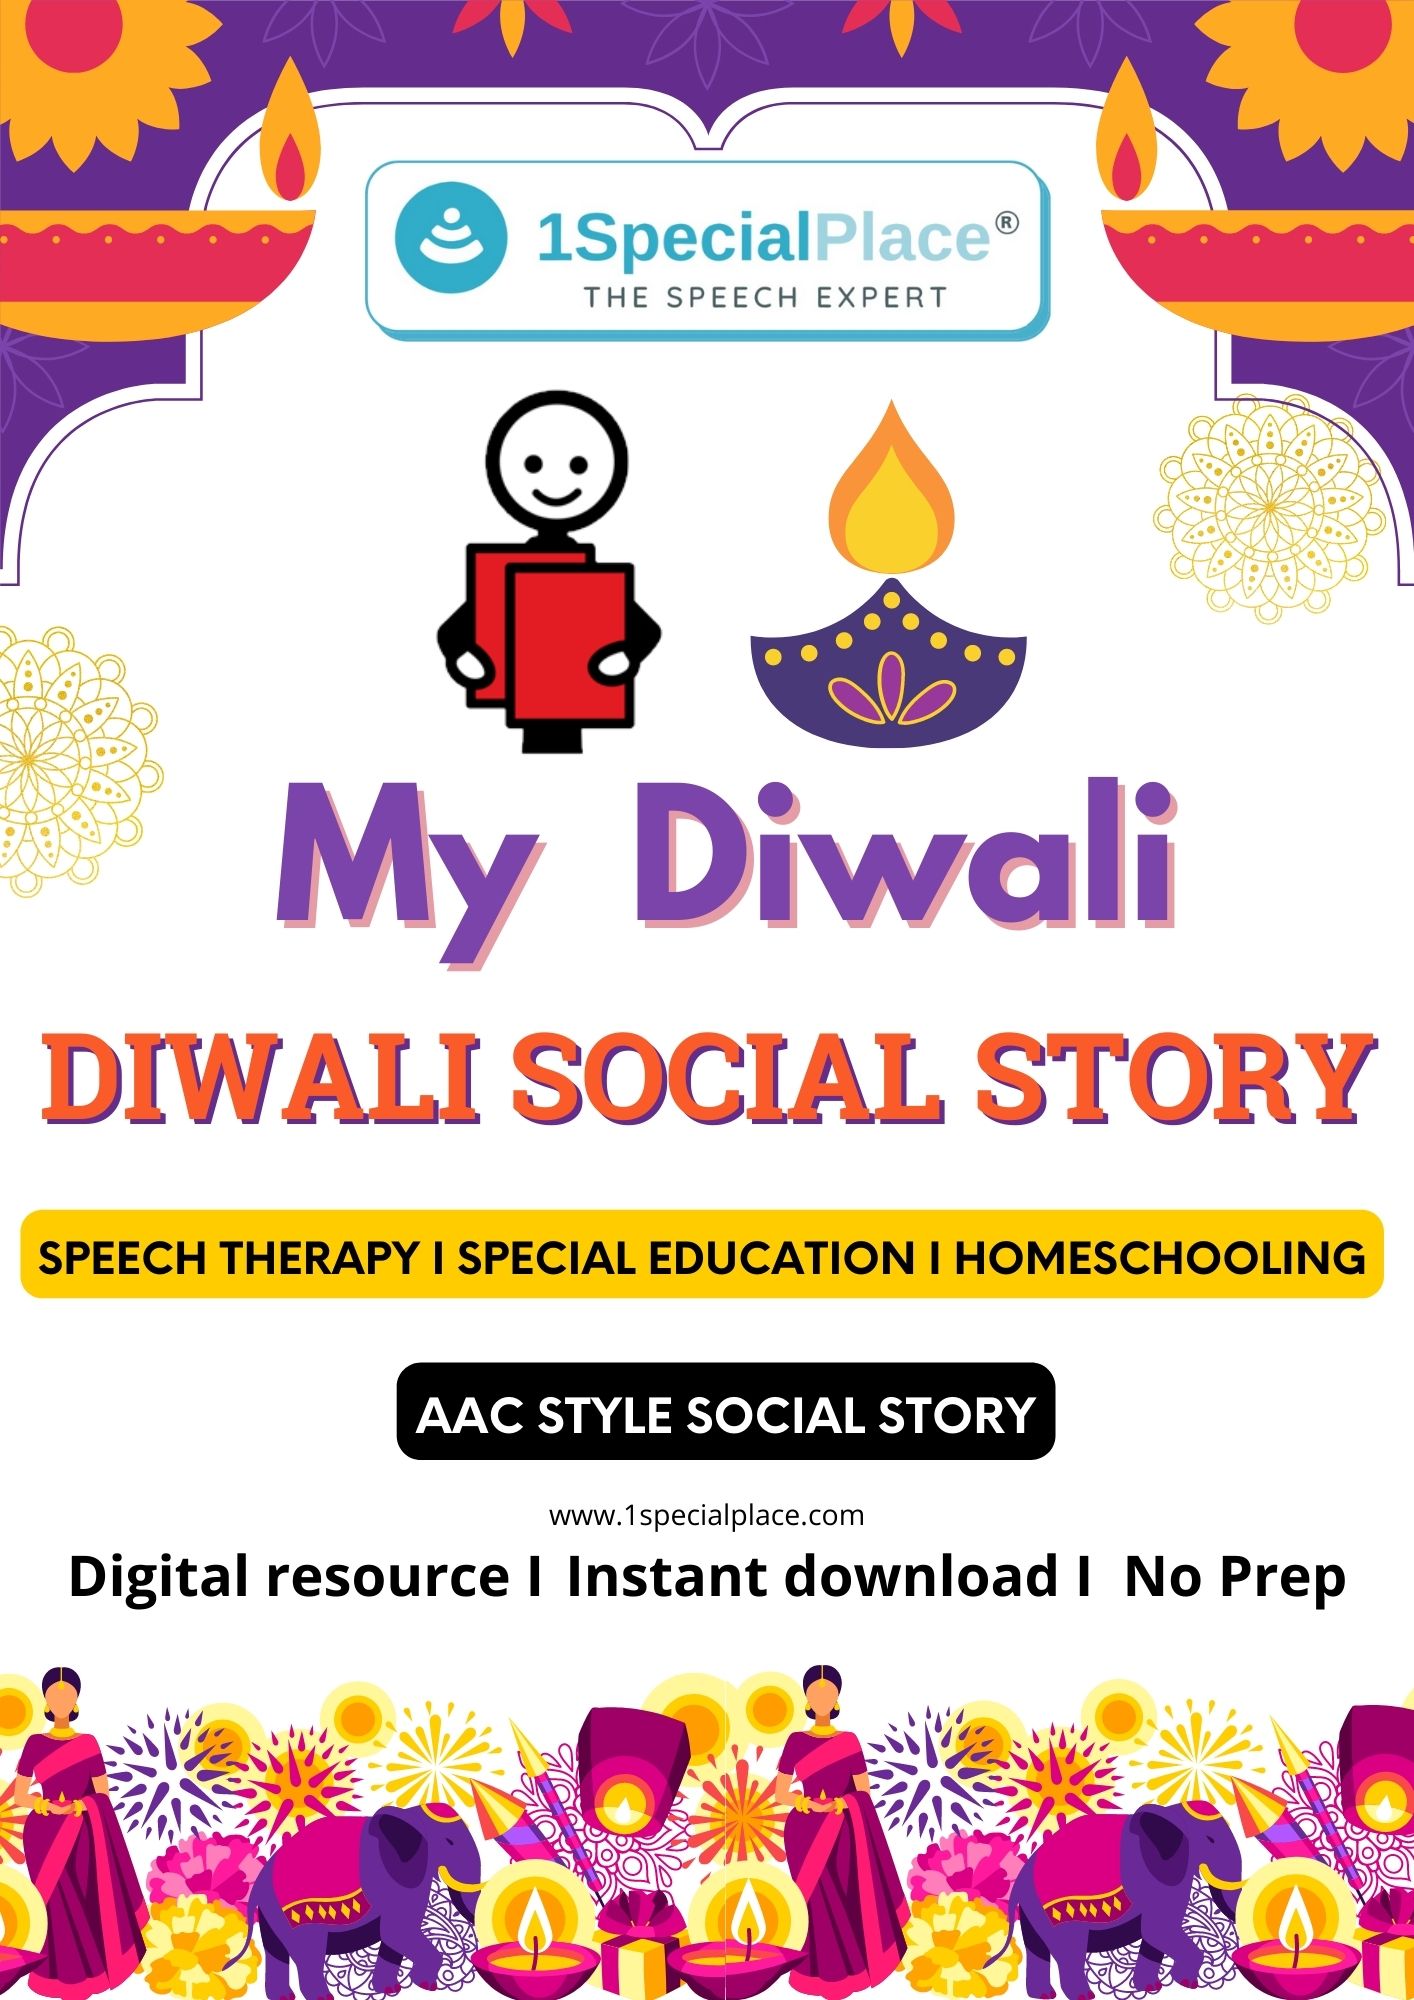 Diwali social story